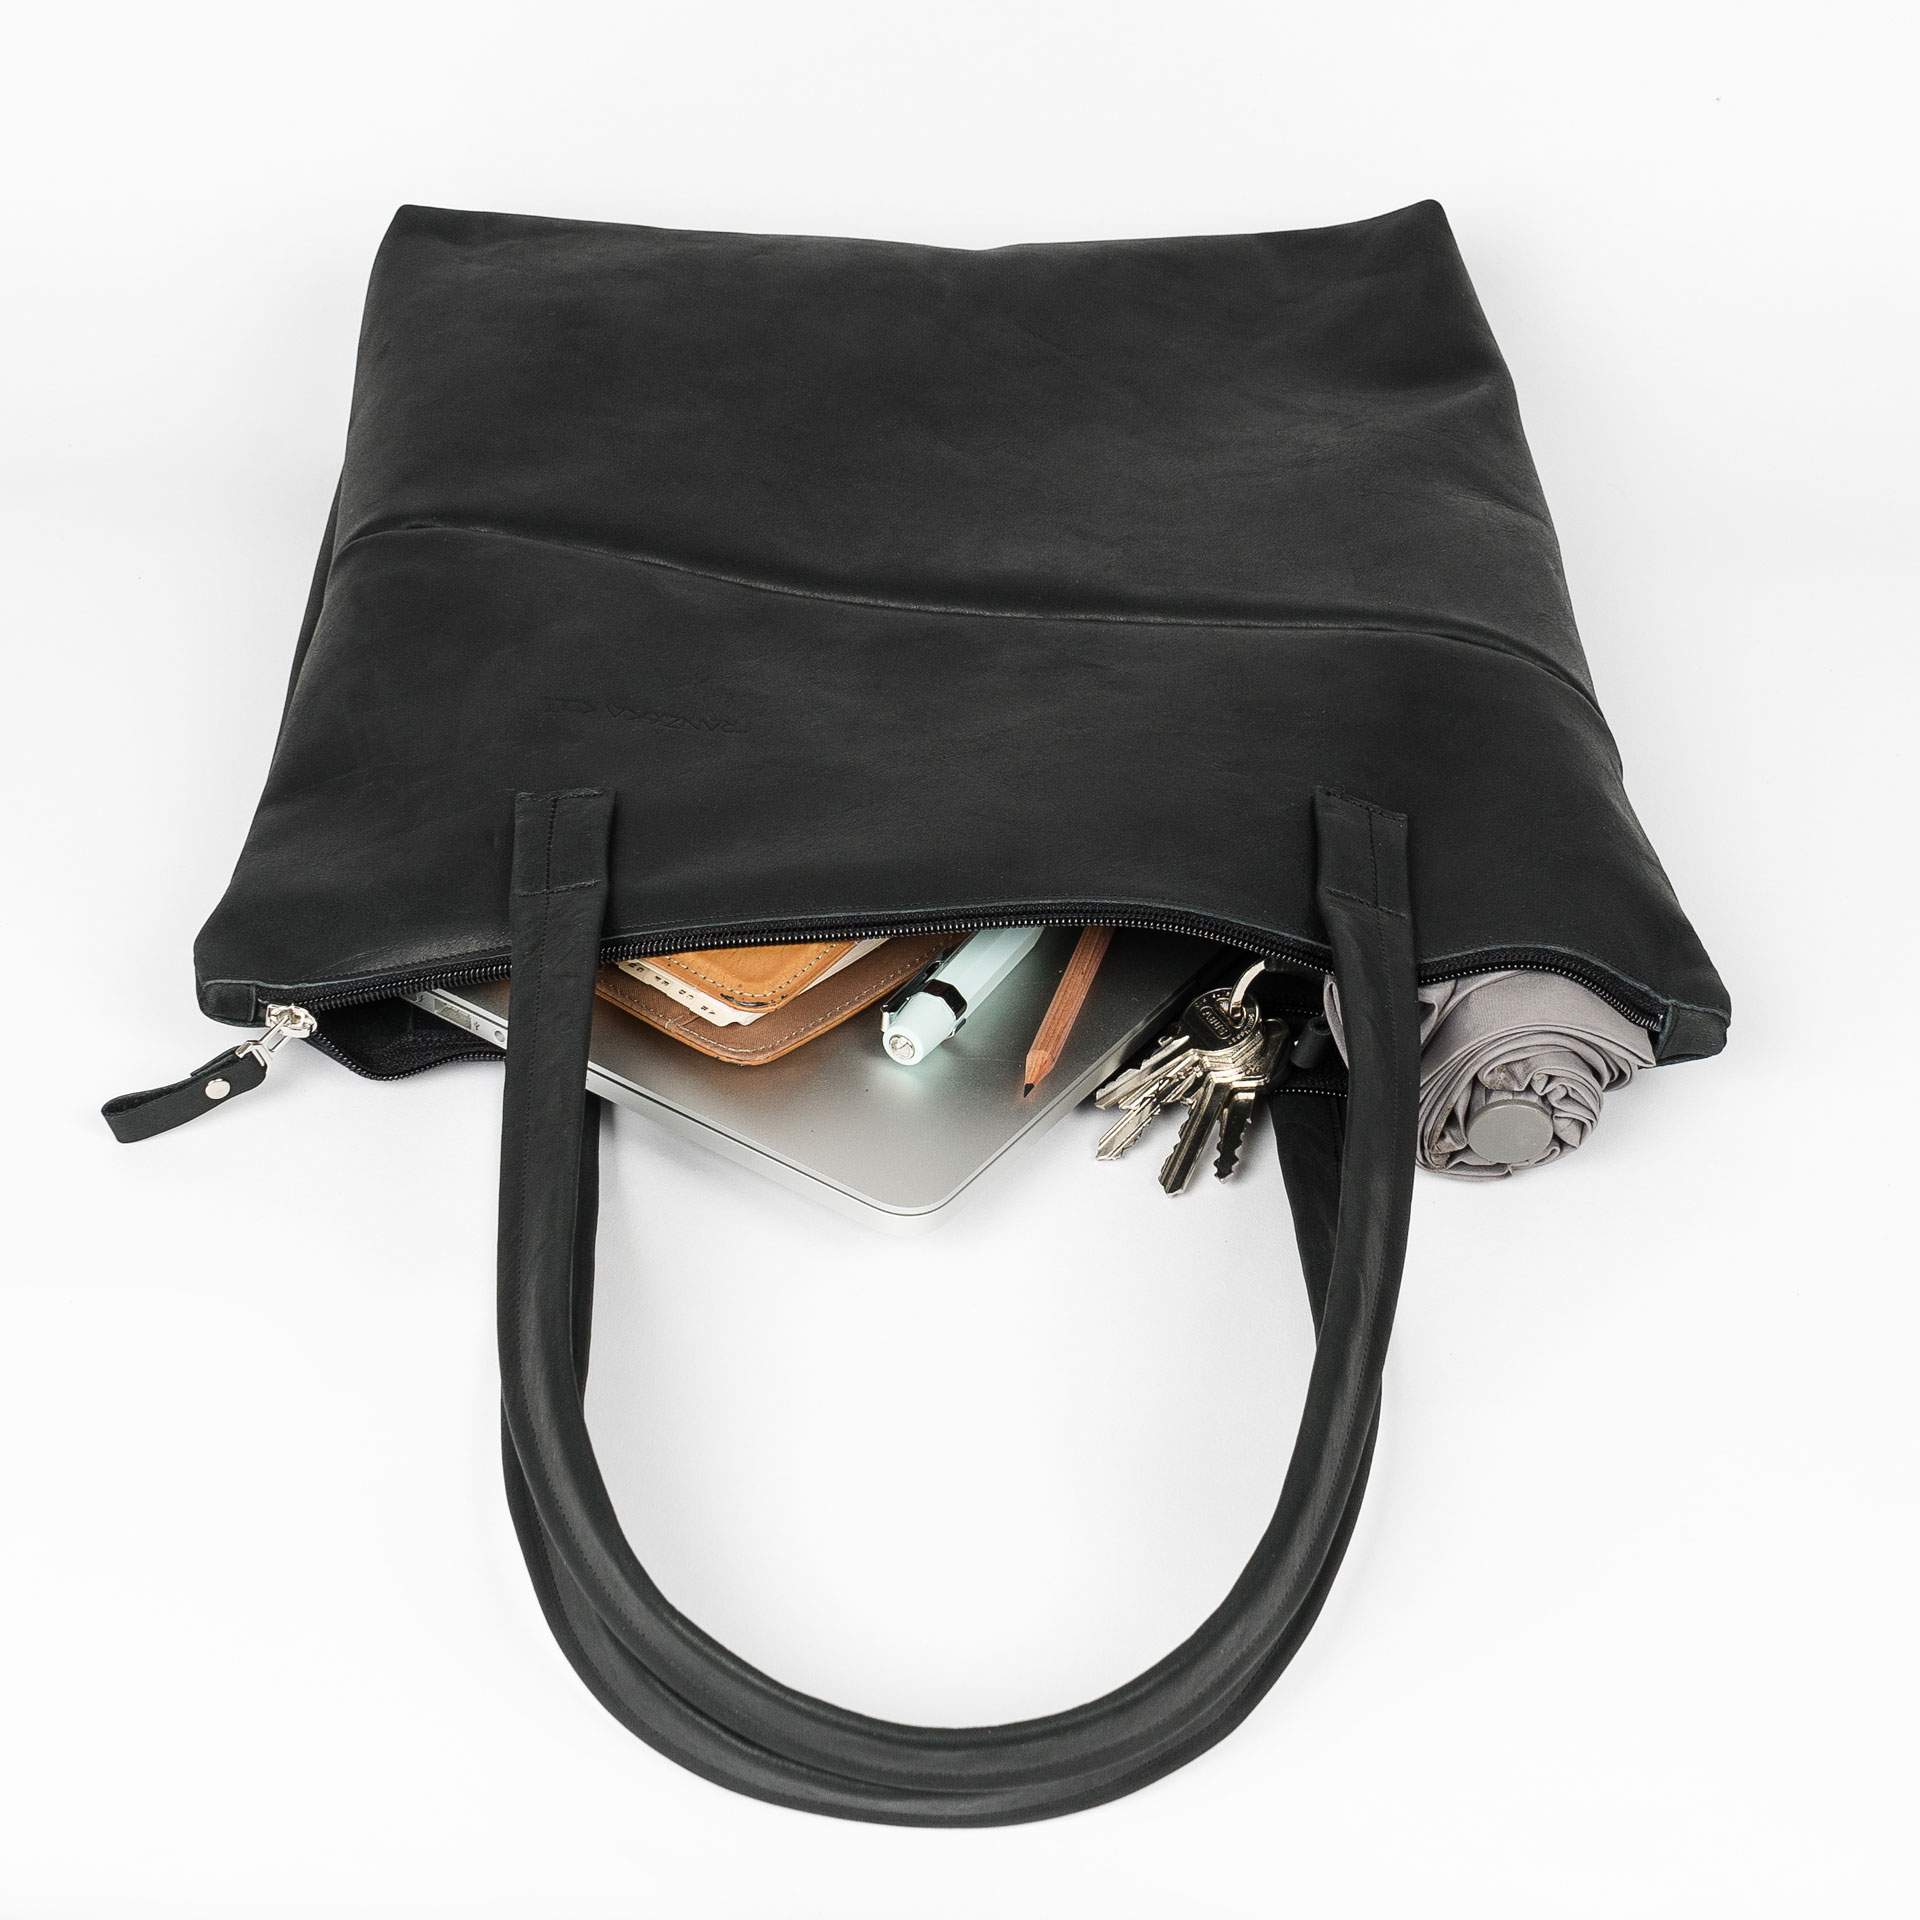 Wickeltasche MIA MIDI aus Naturleder in Kohle gepackt mit Laptop, Notizbuch, Regenschirm und Kleinutensilien